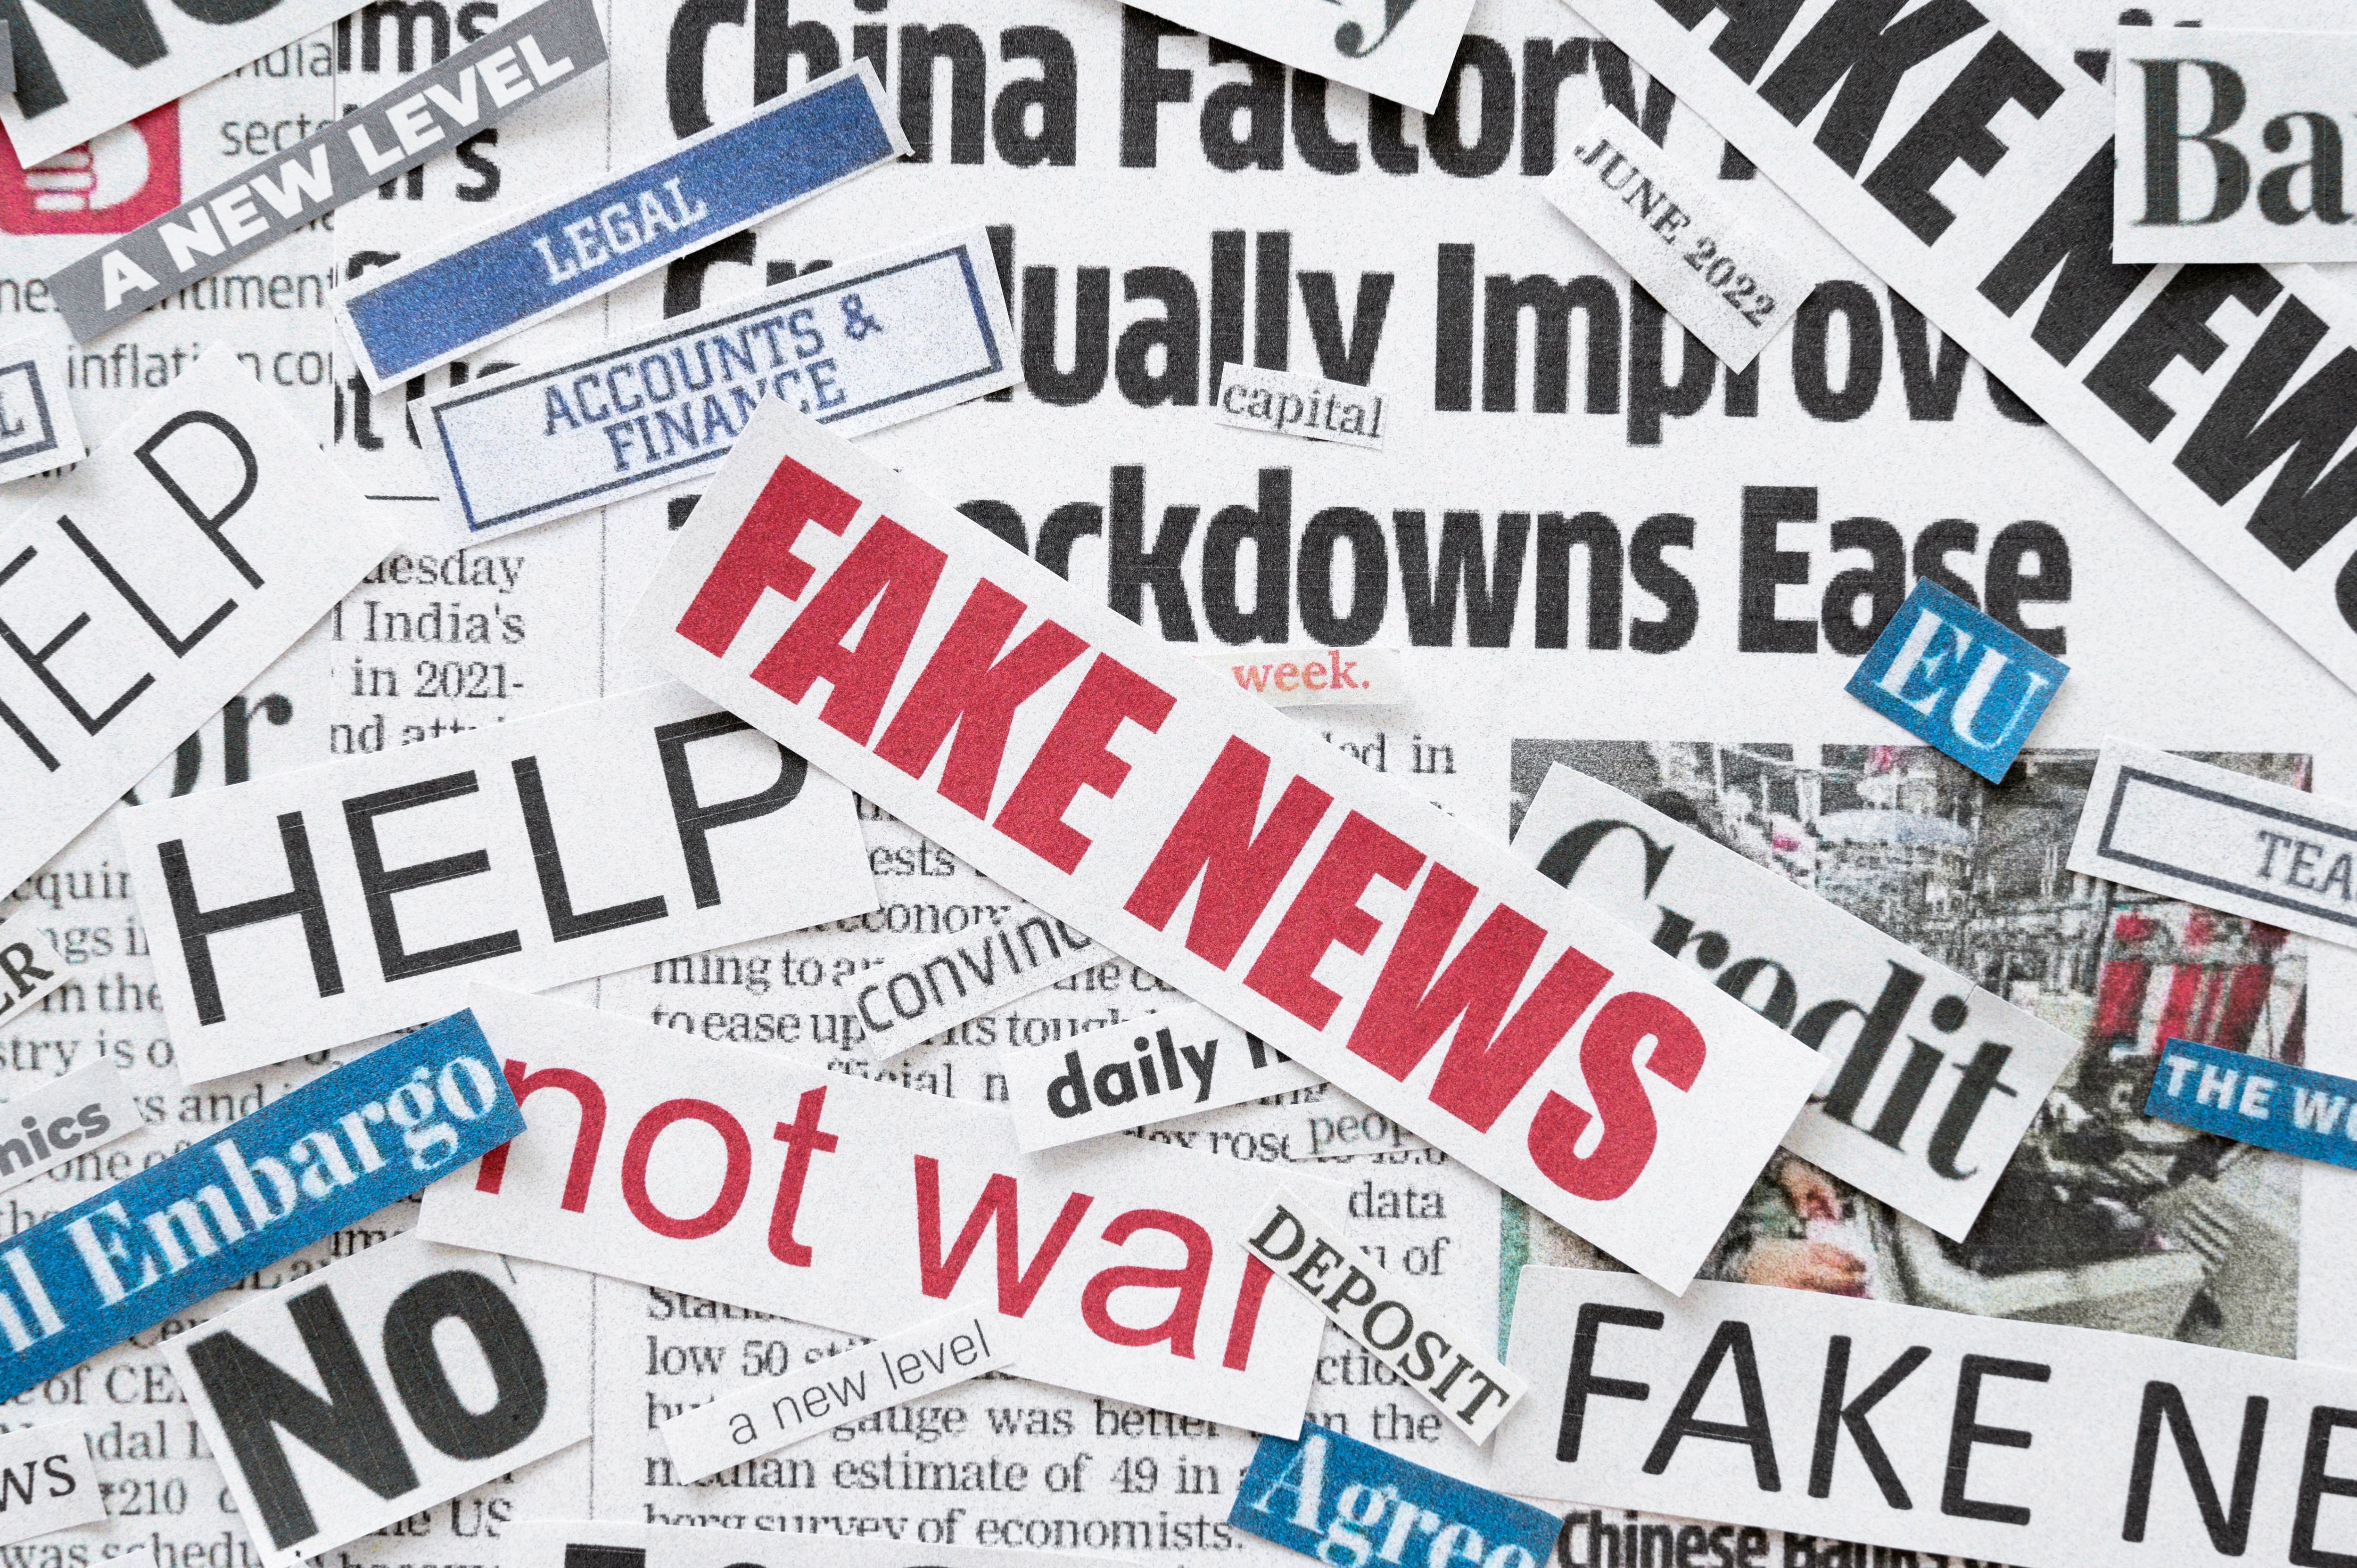 Las noticias falsas se suelen presentar como hechos sorprendentes y se viralizan rápidamente. (Freepik)